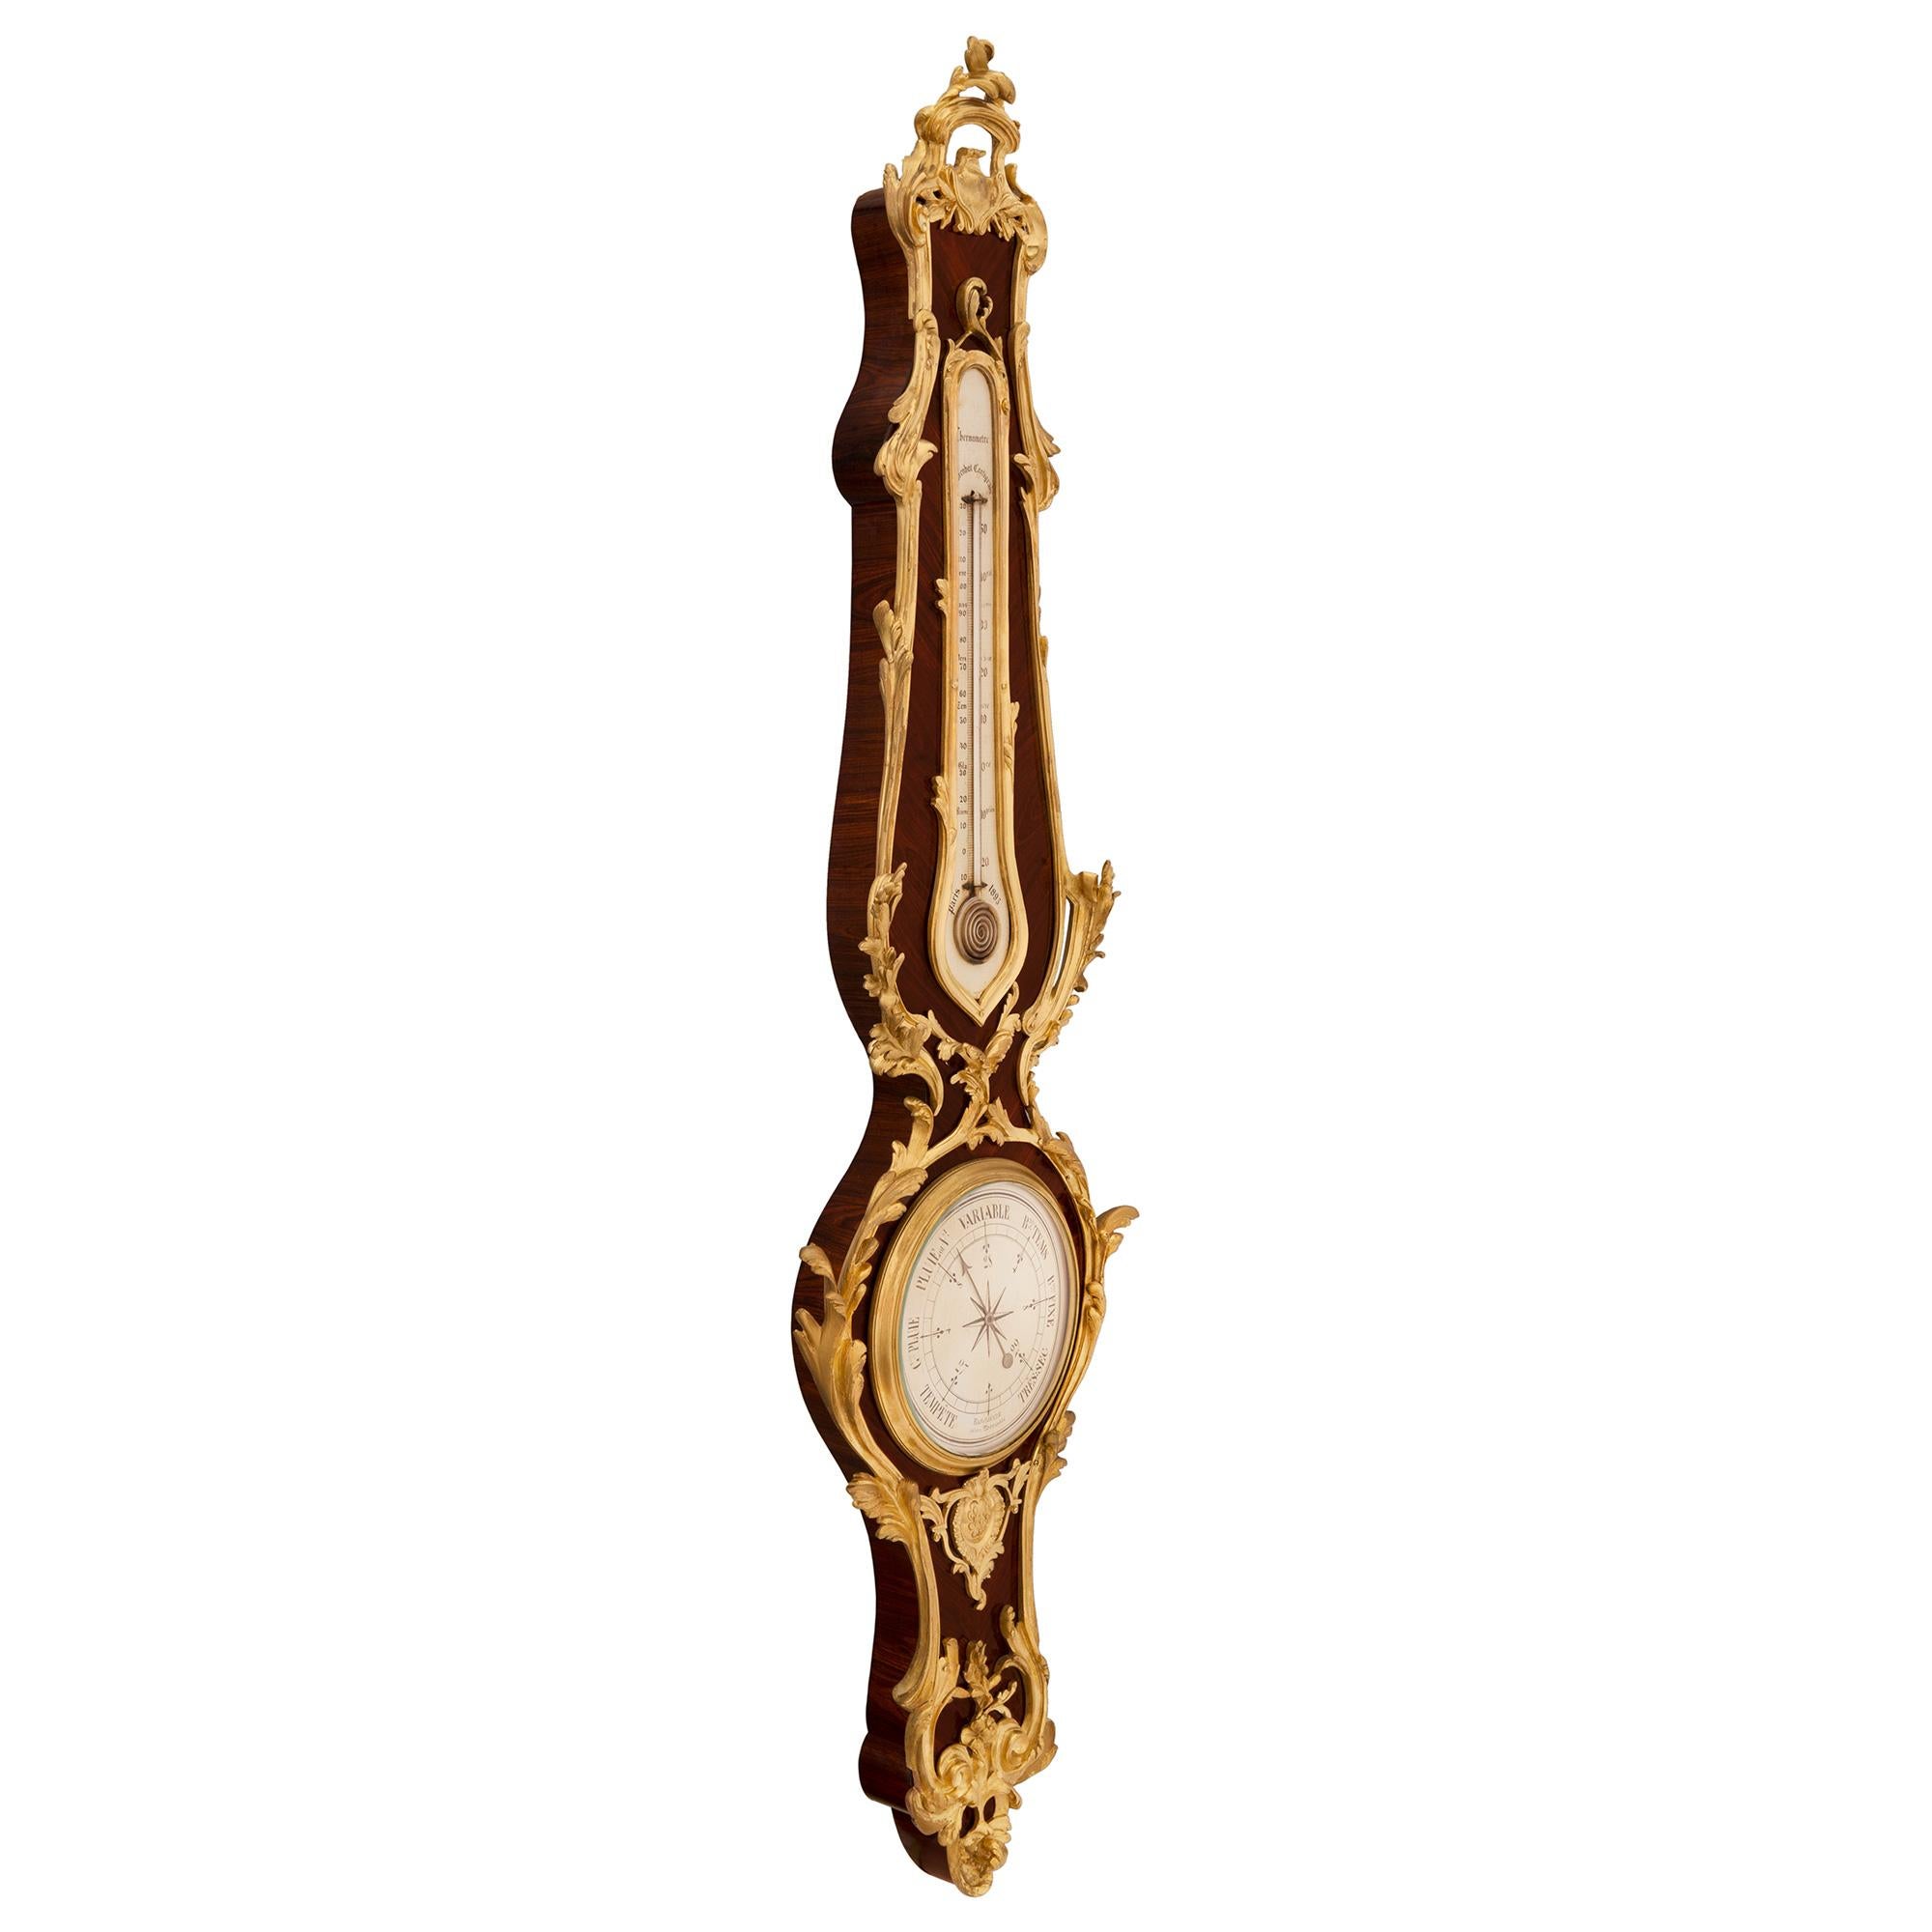 Eine erstaunliche und extrem hohe Qualität Französisch 19. Jahrhundert Louis XV st. Königsholz und Ormolu Barometer / Thermometer, signiert F. Linke. Das Barometer wird von einer feinen, reich ziselierten, blattförmigen Bodenreserve mit eleganten